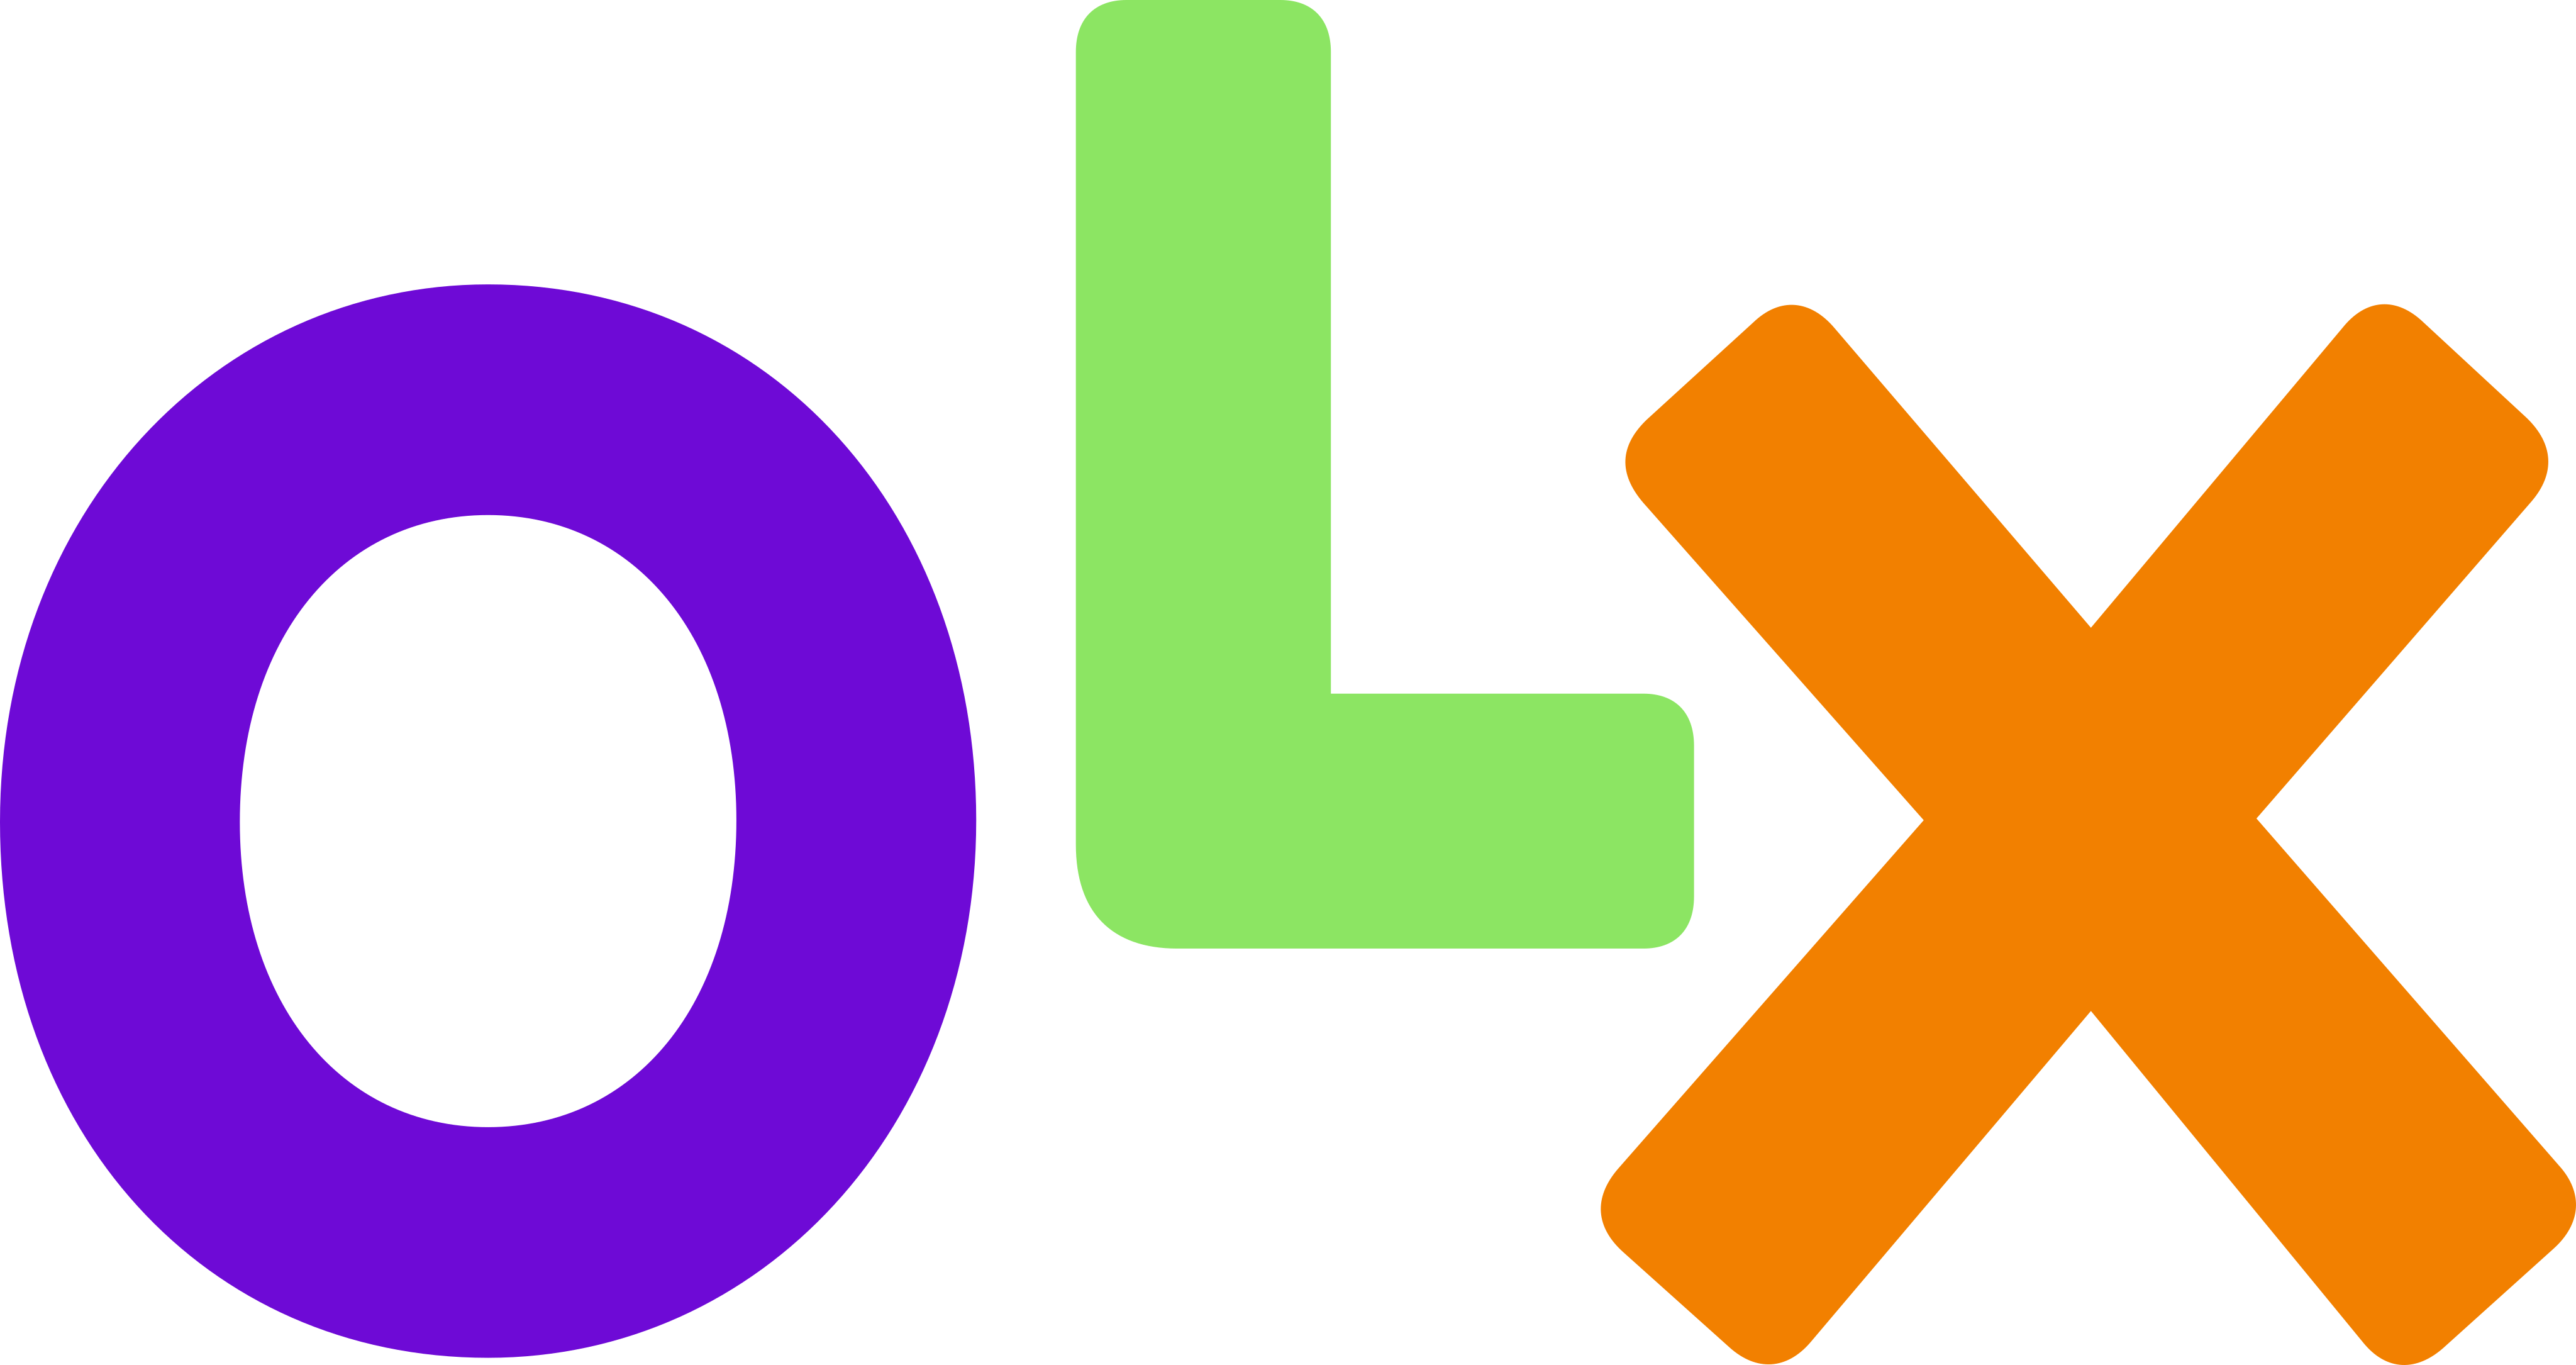 olx logo 13 - OLX Logo